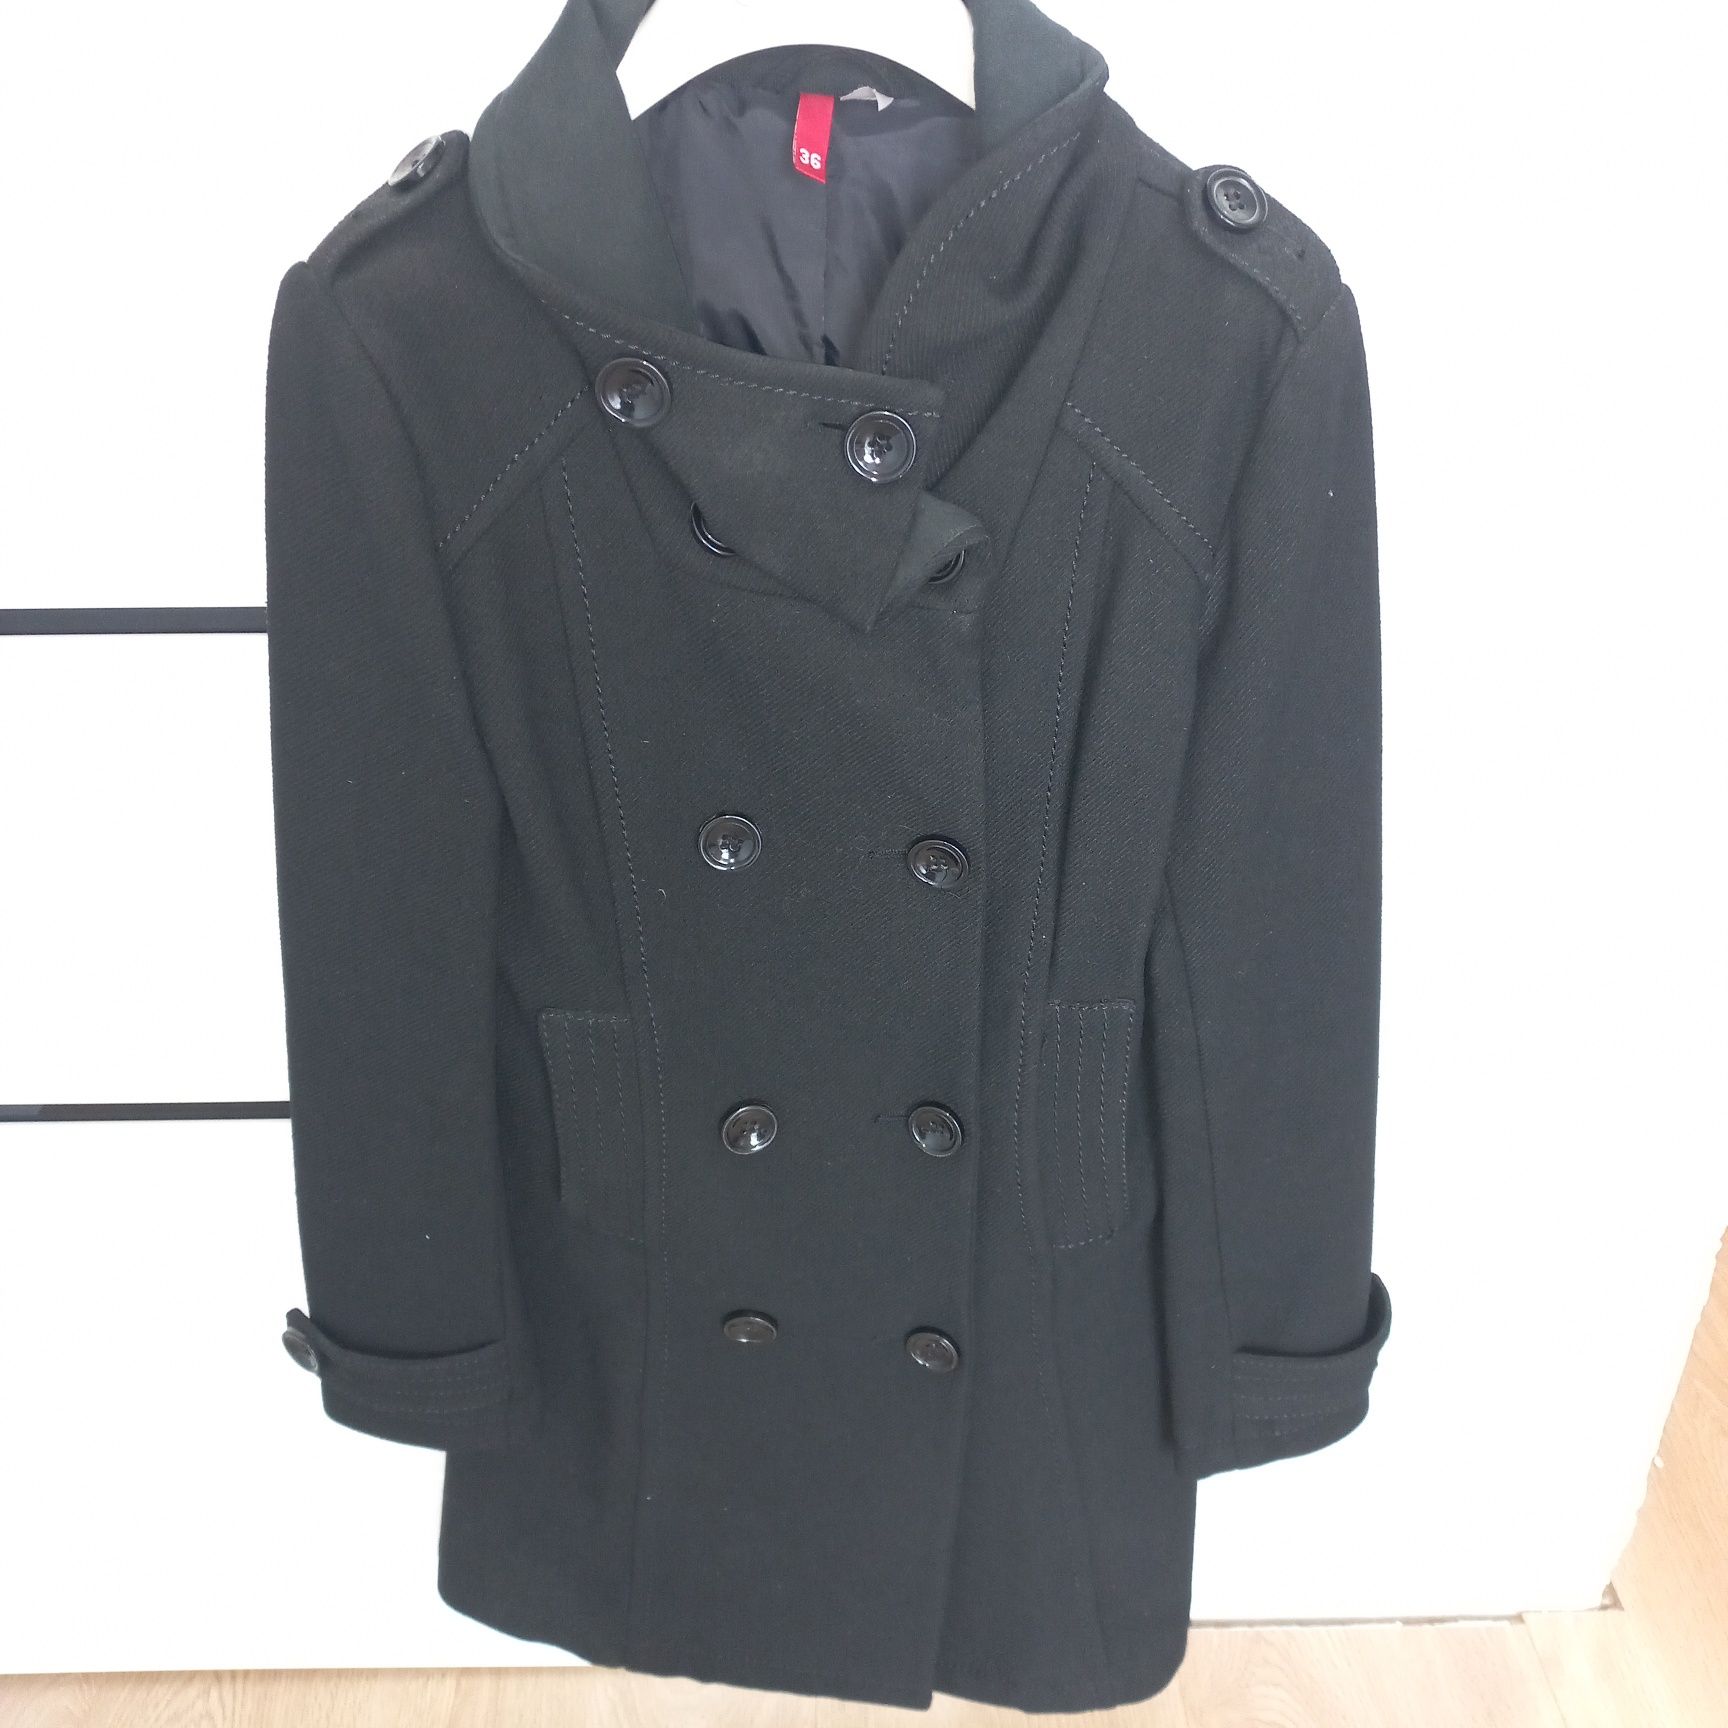 H&M płaszcz damski, czarny rozmiar 36